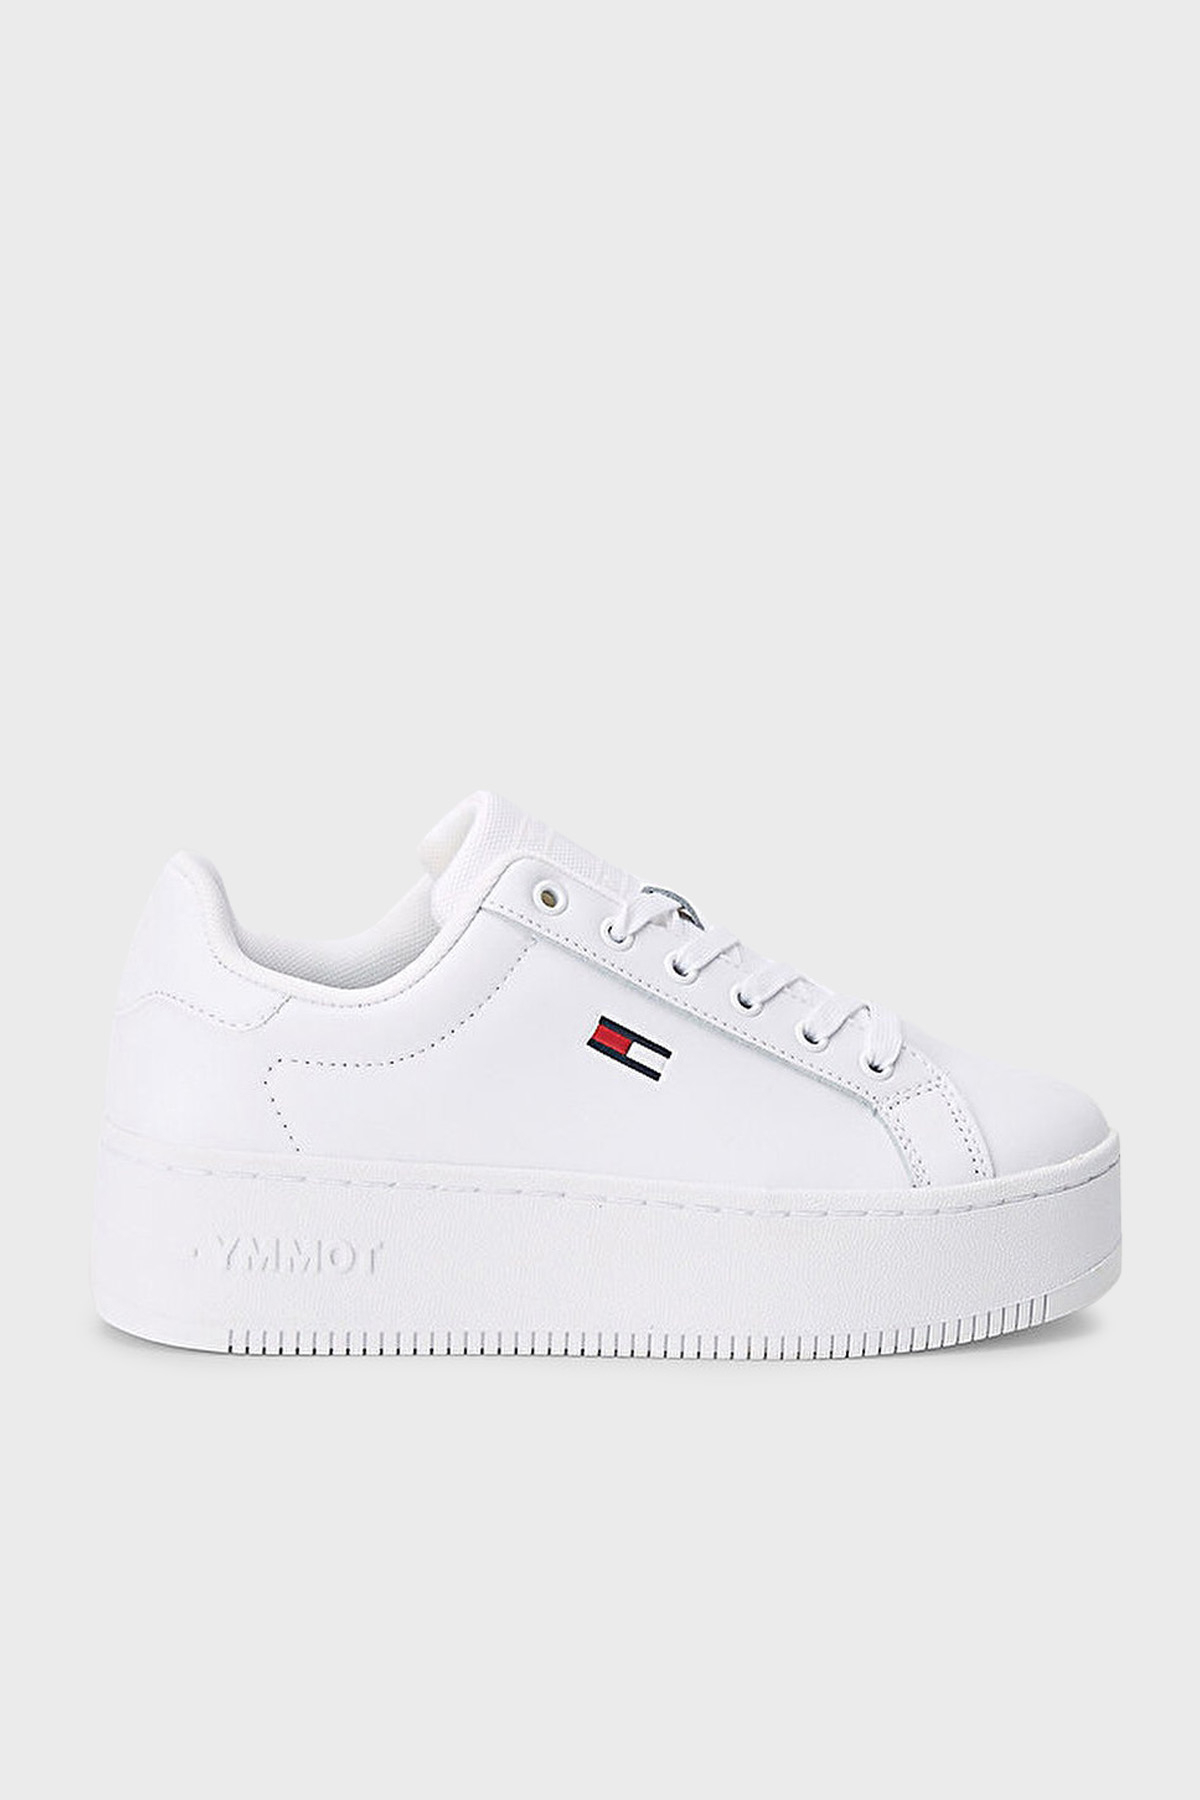 Tommy Hilfiger Logolu Kalın Tabanlı Hakiki Deri Sneaker Bayan Ayakkabı EN0EN02043 YBR BEYAZ